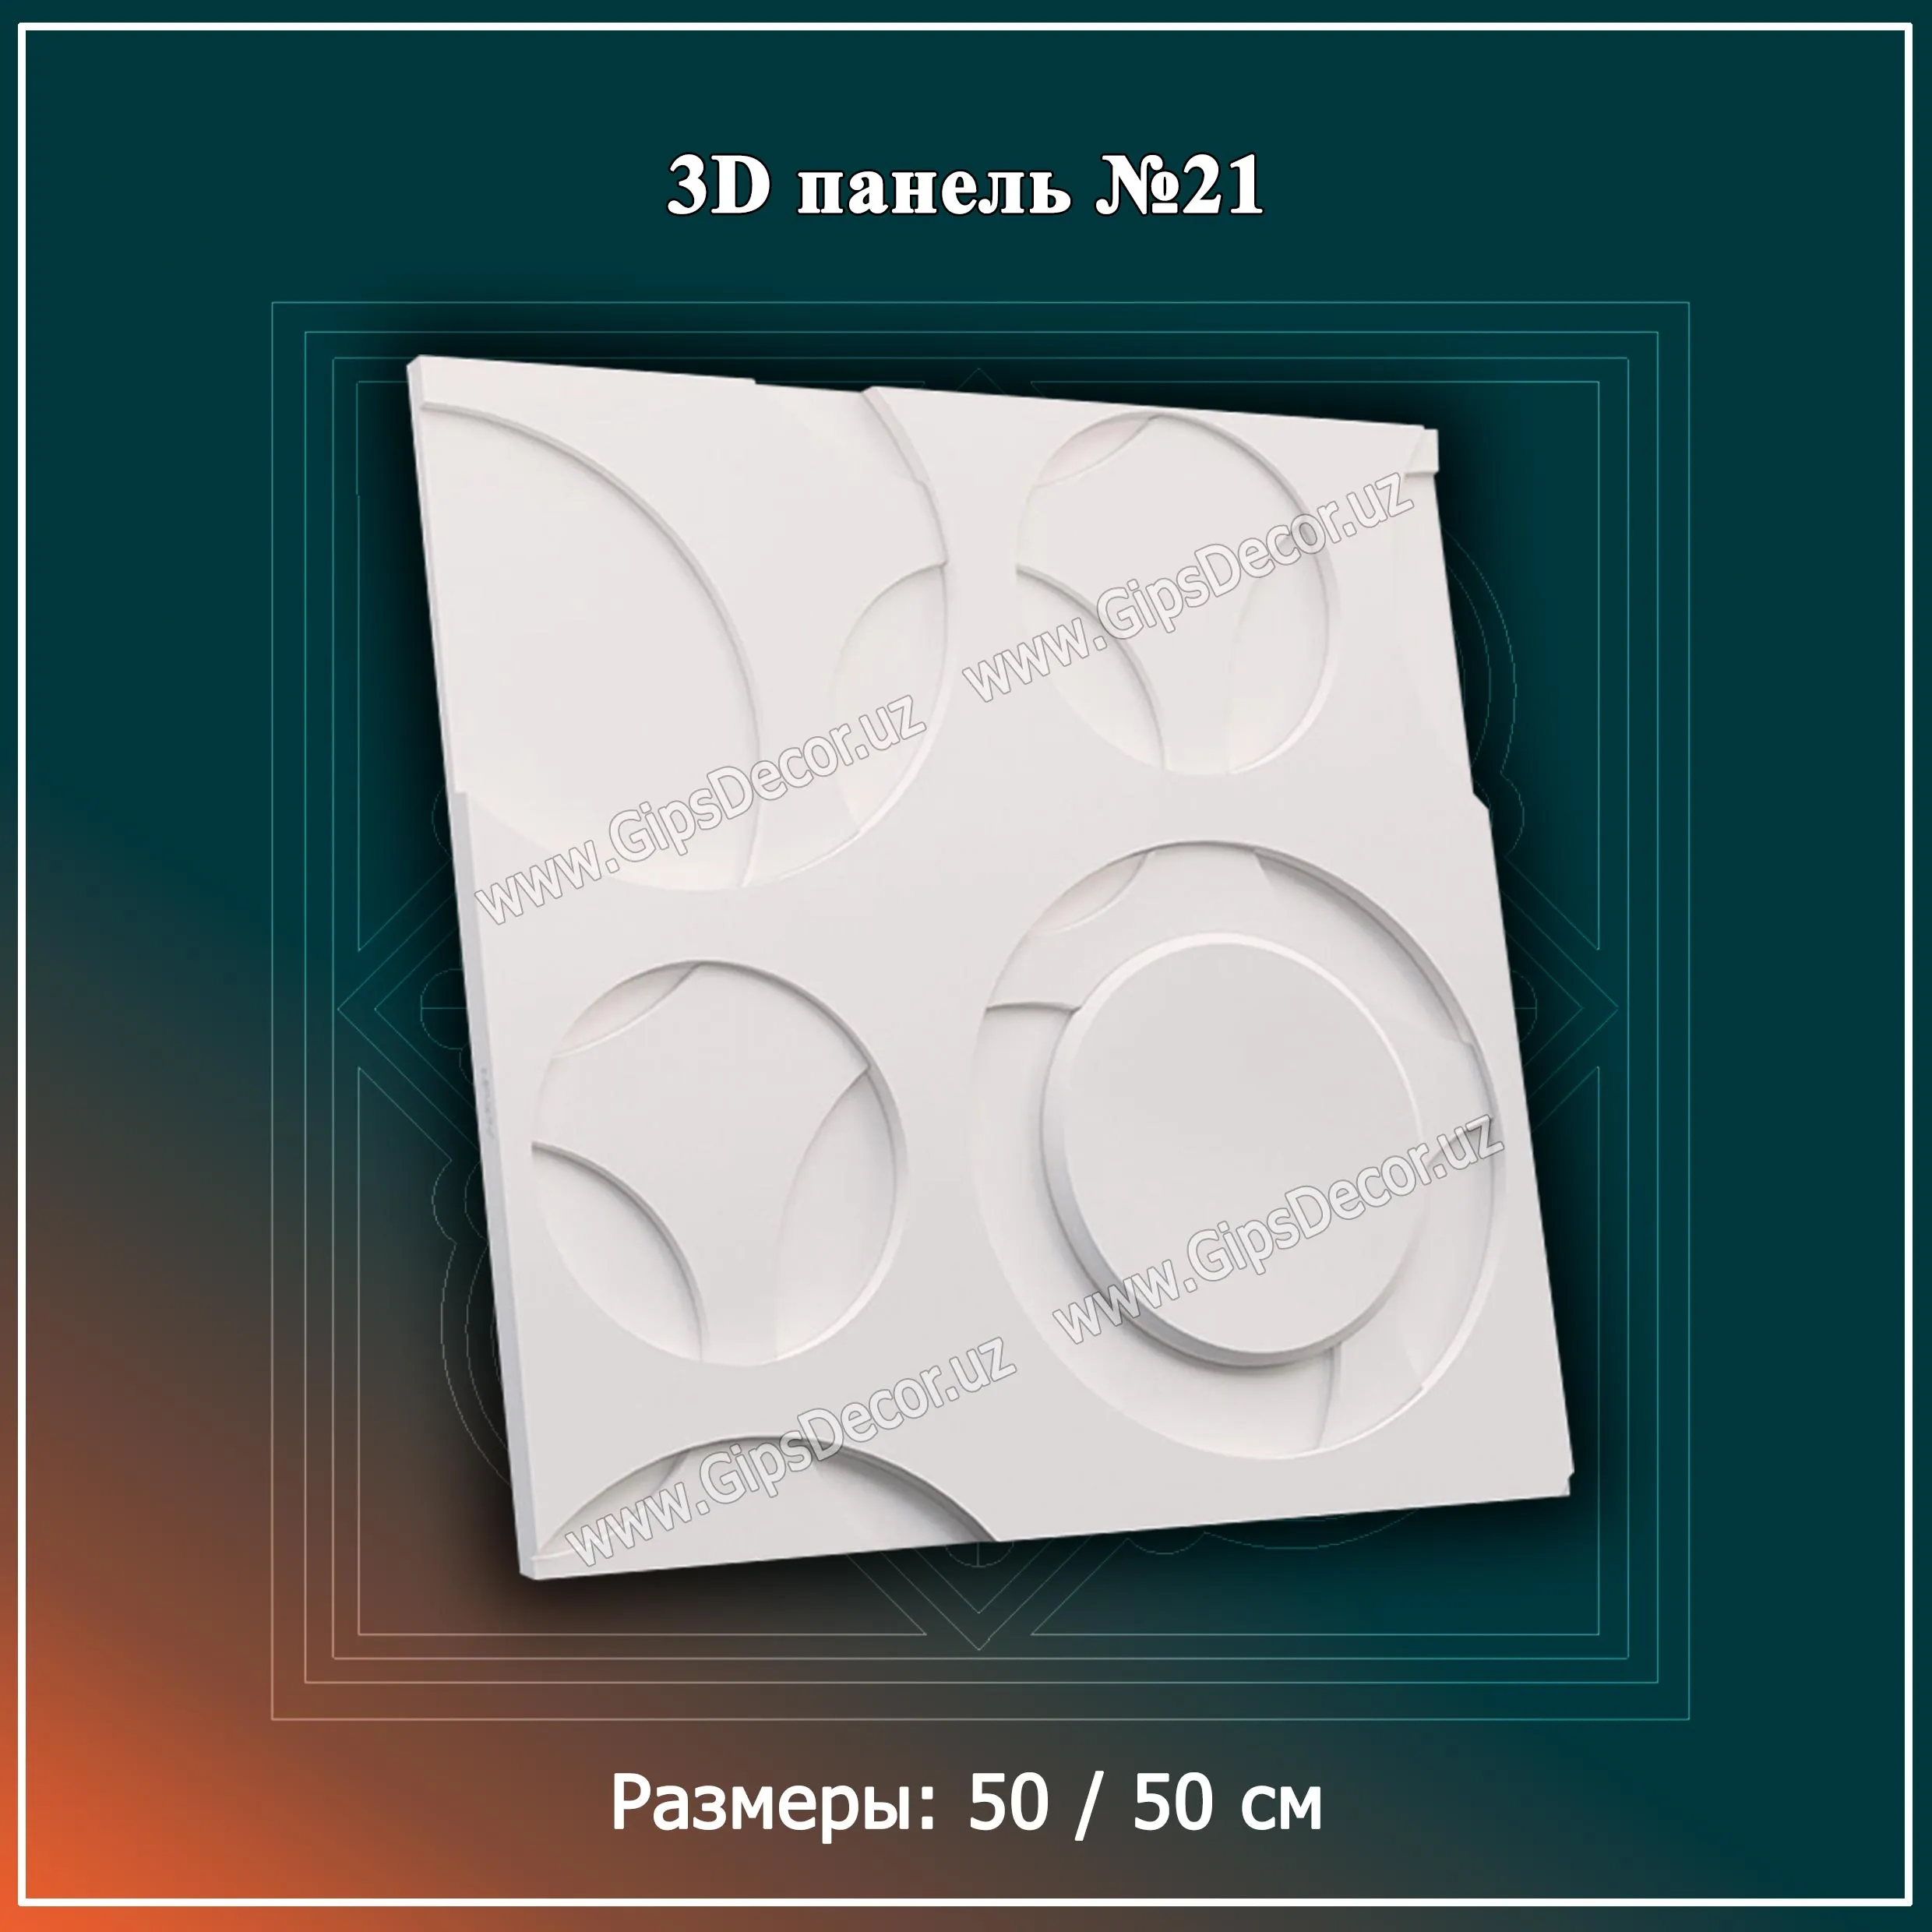 3D Панель №21 Размеры: 50 / 50 см#1